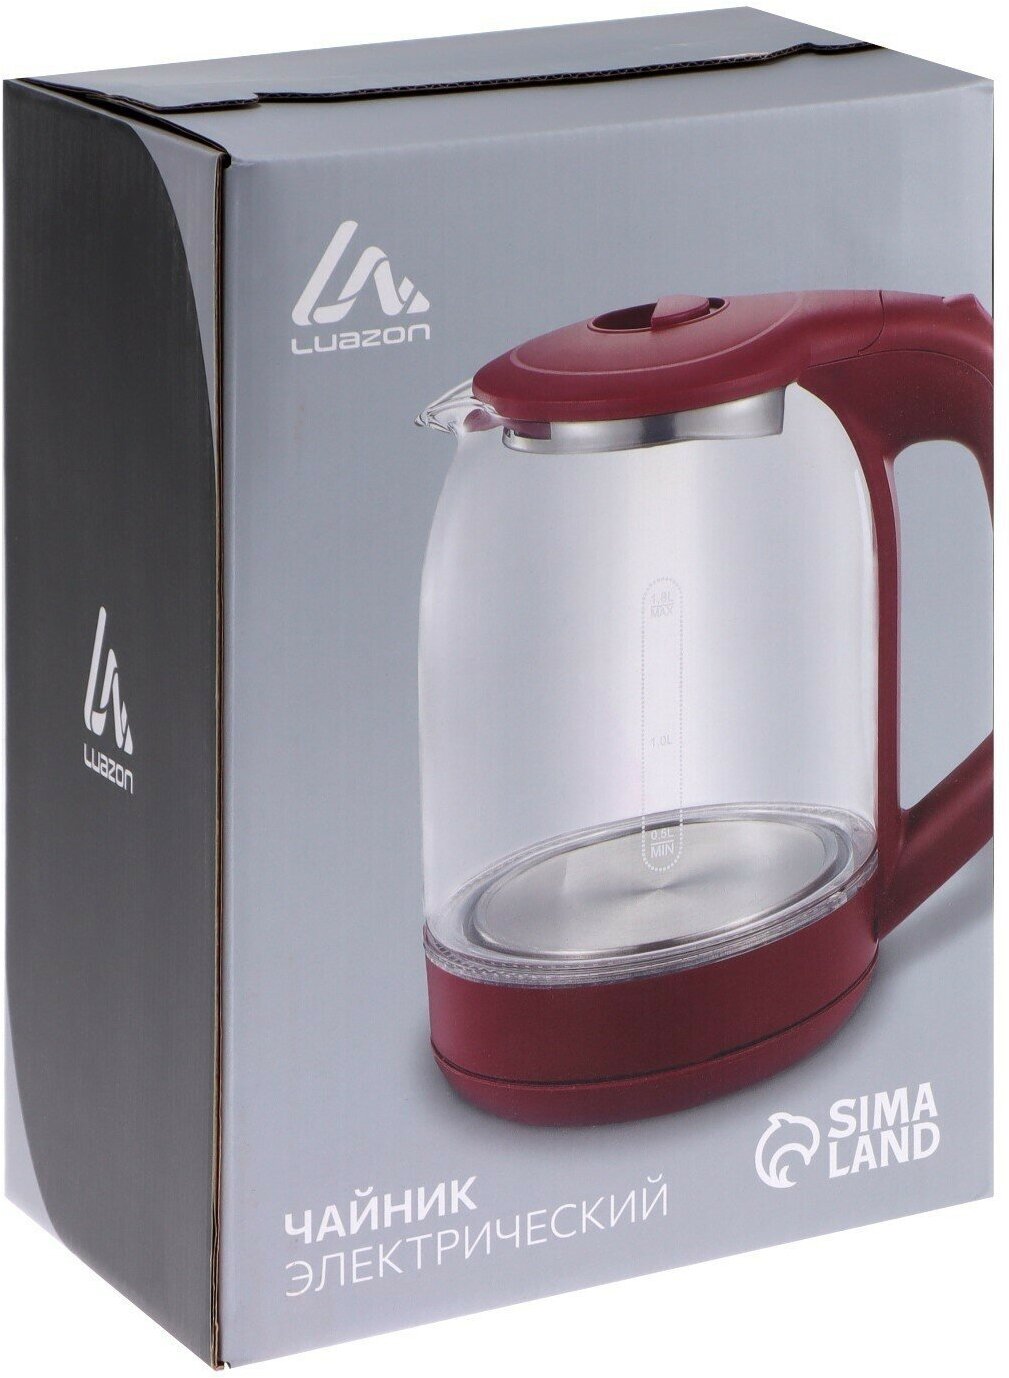 Чайник электрический LuazON LSK-1809, стекло, 1.8 л, 1500 Вт, подсветка, красный Luazon Home - фото №13